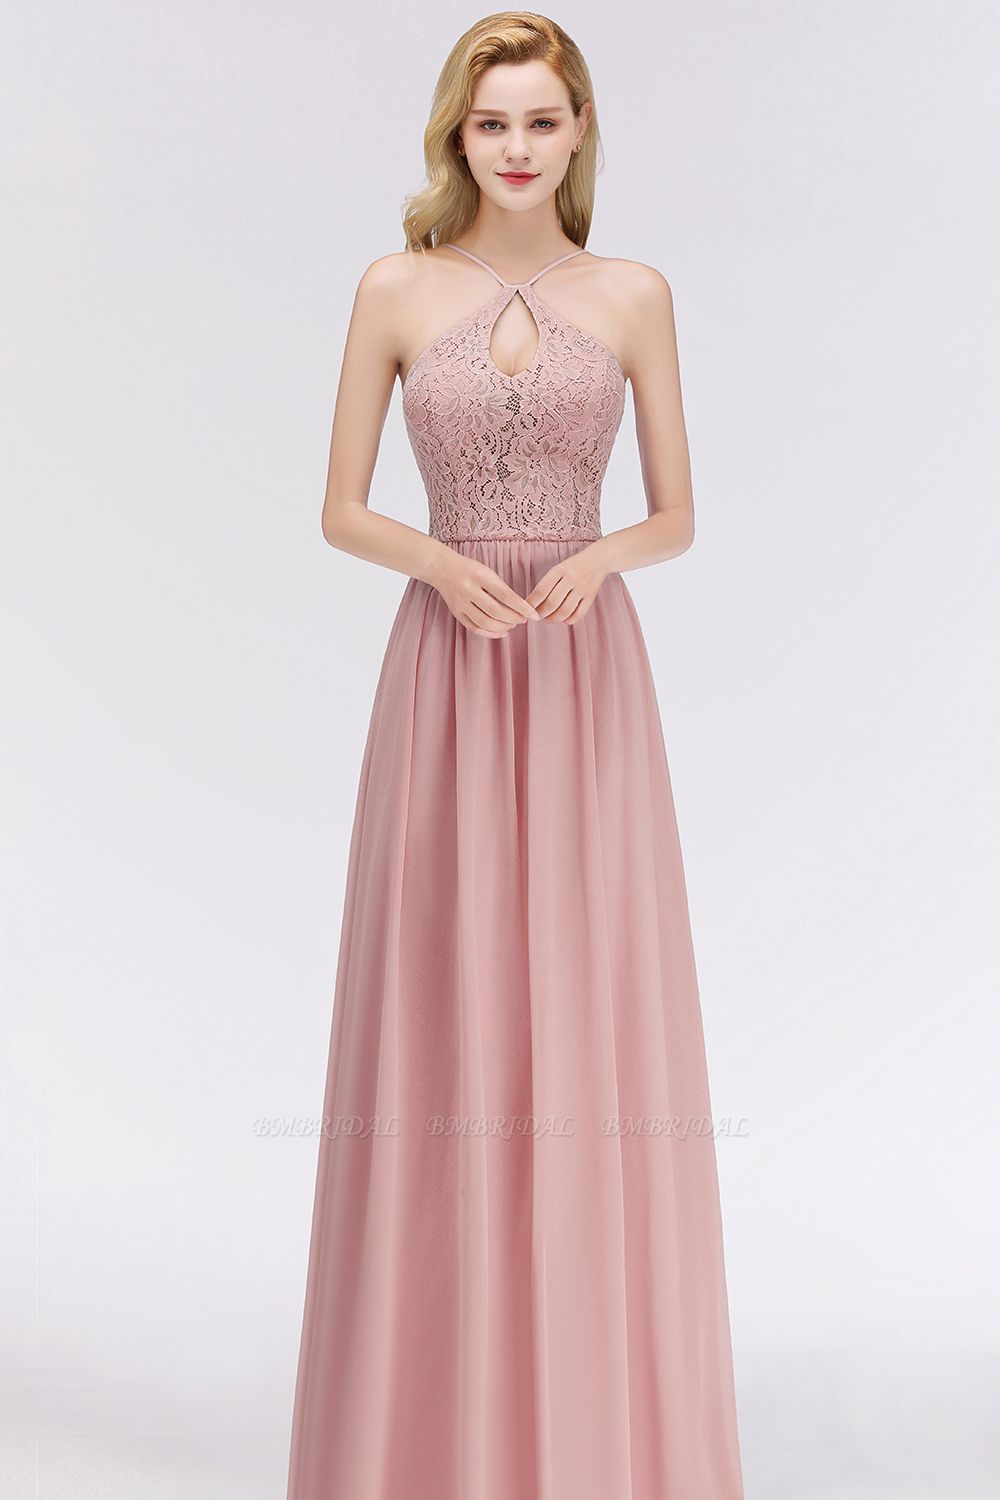 Elegant Lace Keyhole Halter Dusty Rose Bridesmaid Dress